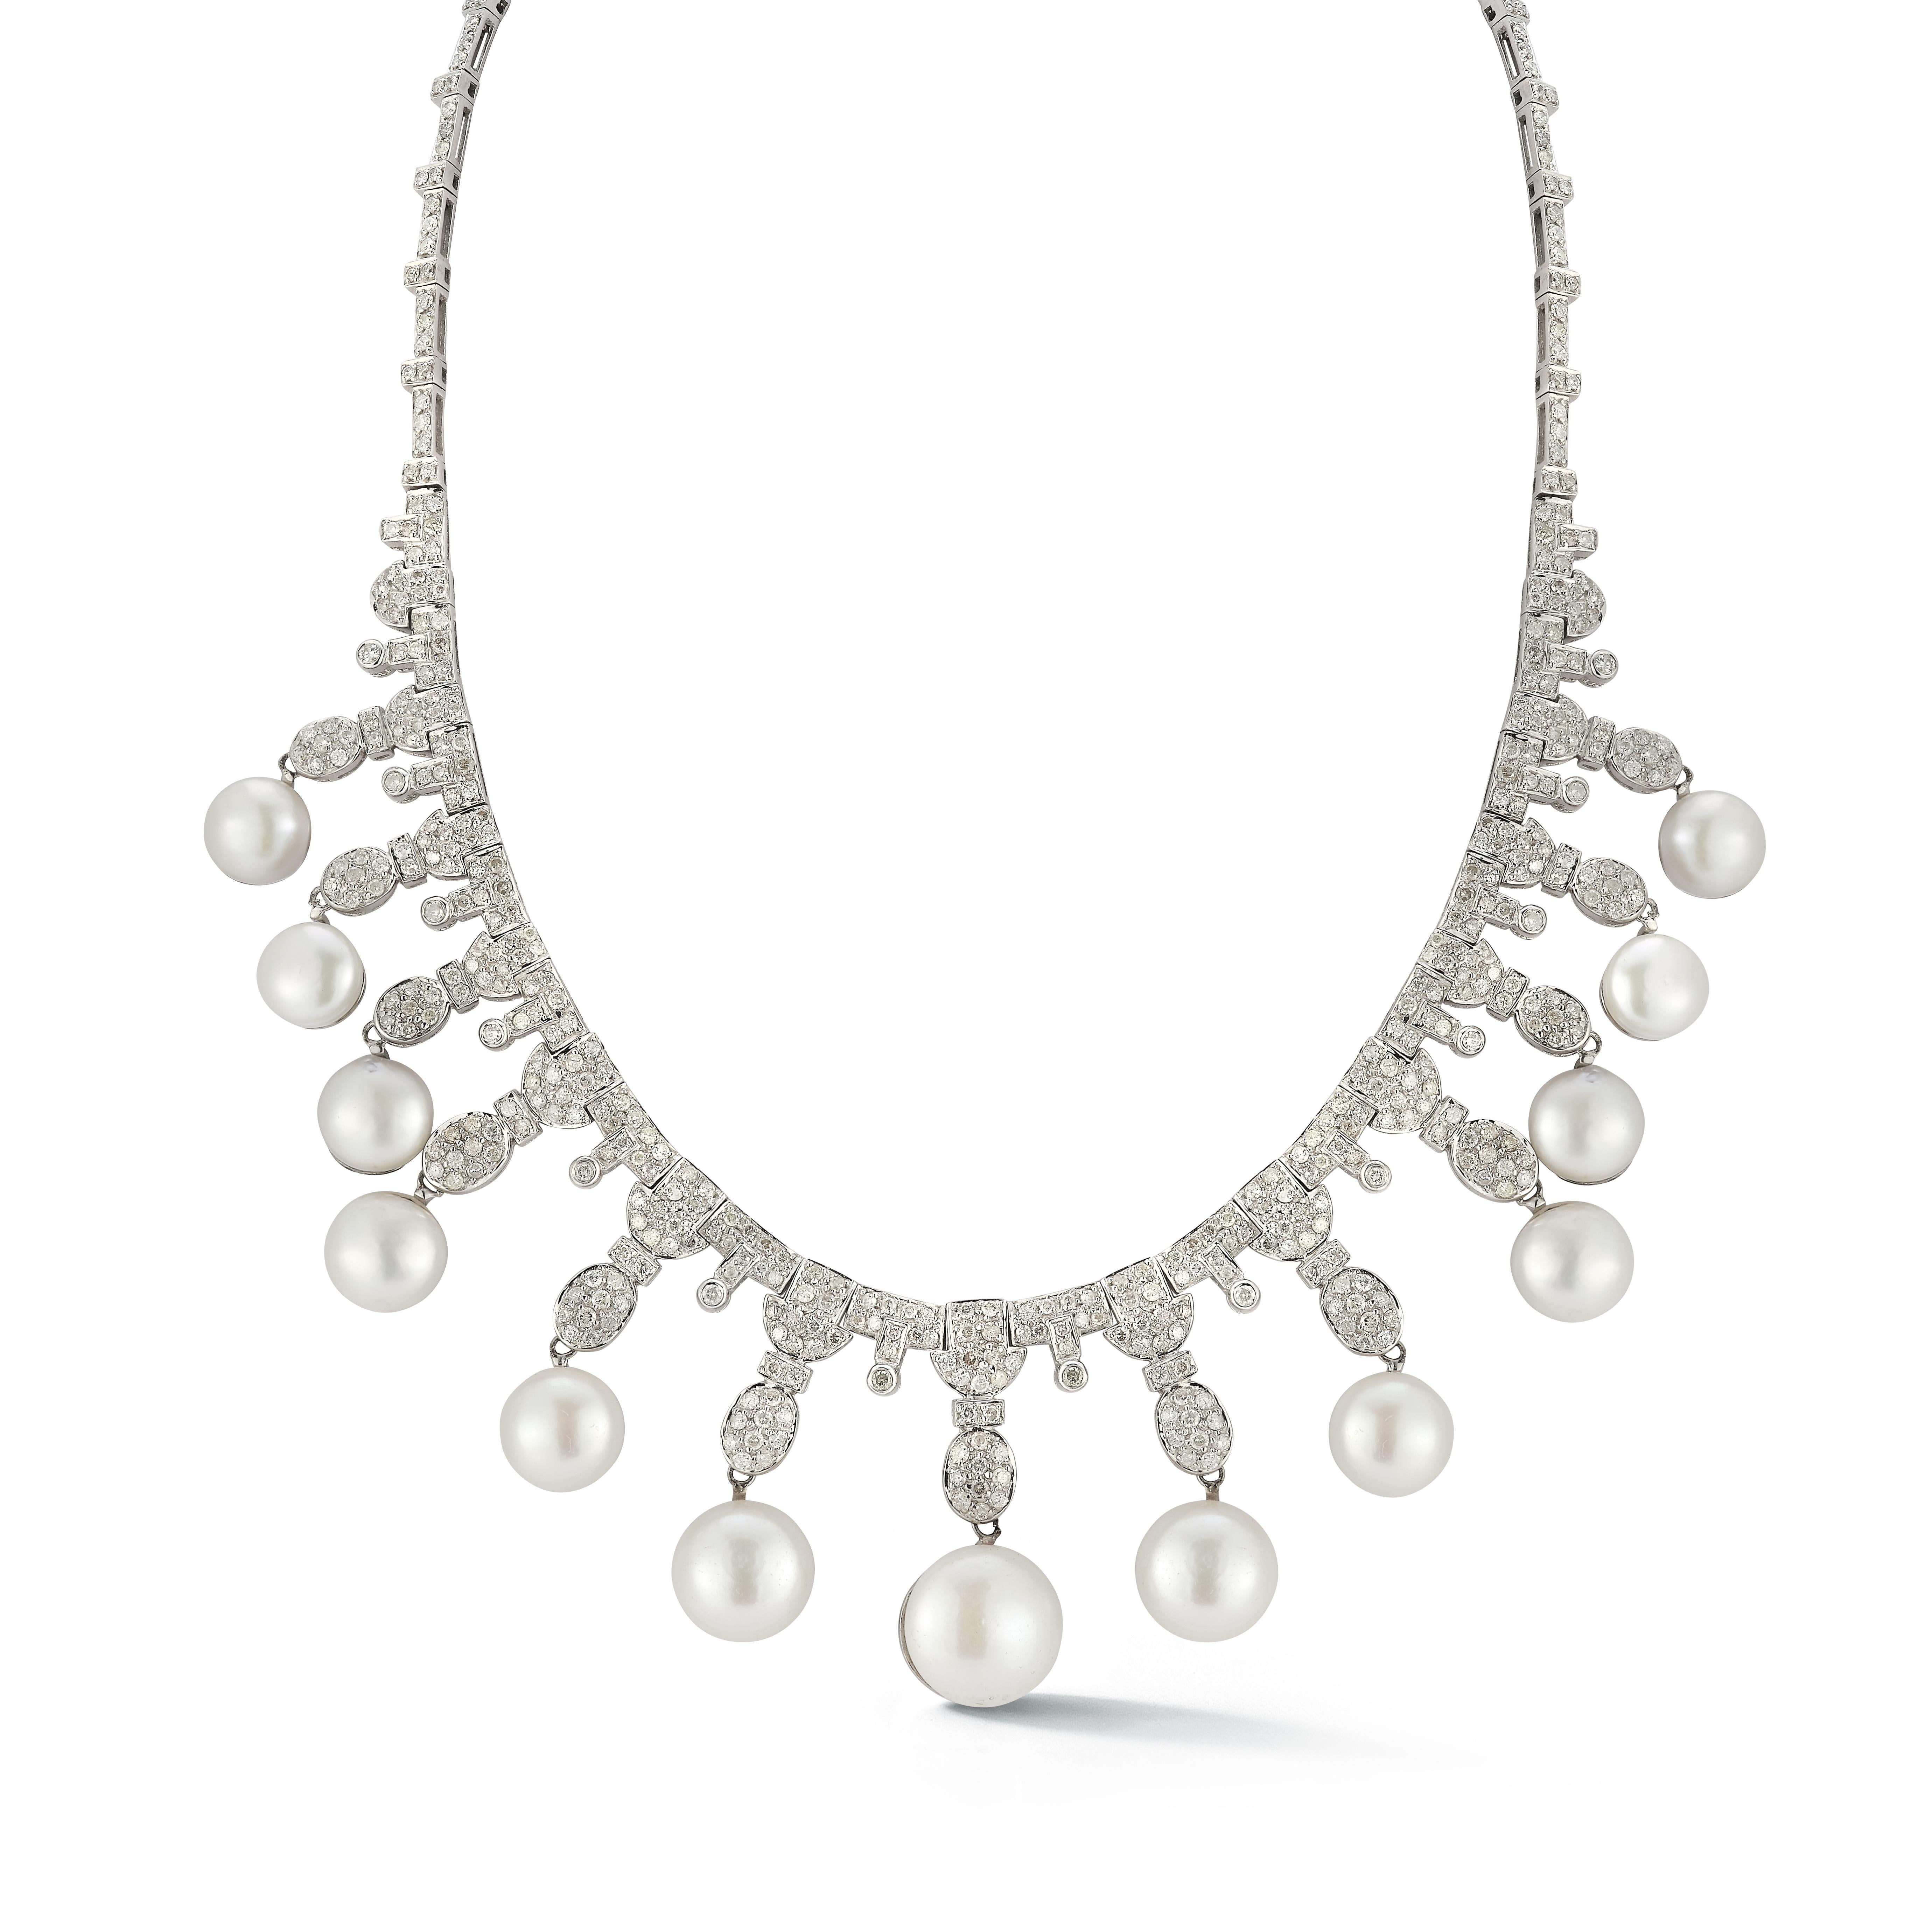 Perlen- und Diamant-Halskette

Eine Halskette aus 18 Karat Weißgold, besetzt mit 13 Perlen und runden Diamanten von etwa 11 Karat

Länge: 16